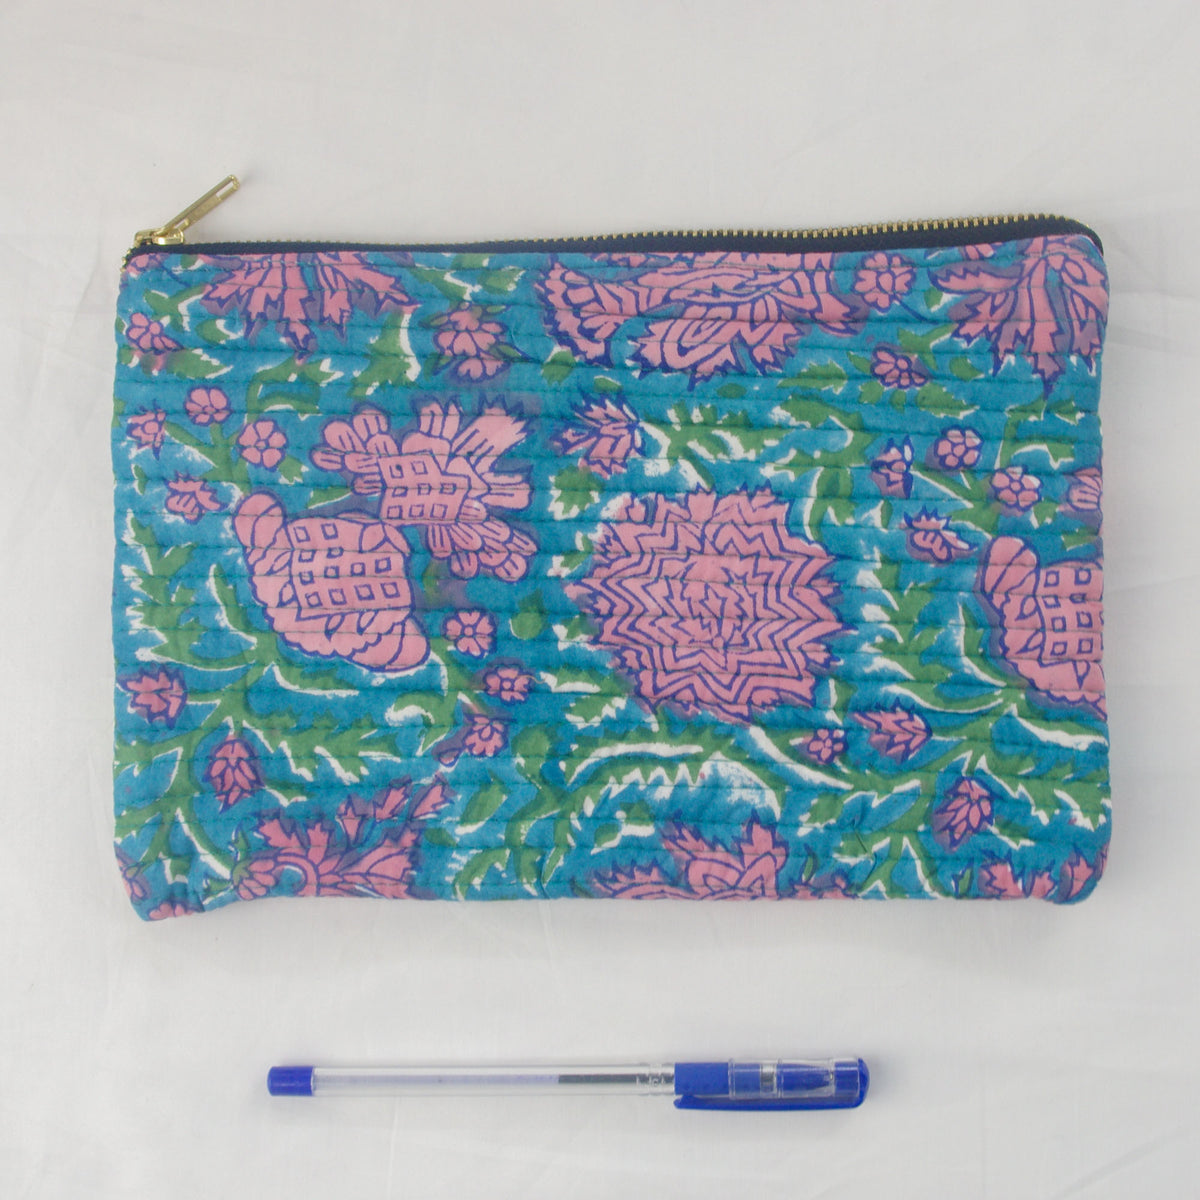 Block Print Makeup Pouch or Pencil Case- Blue Pink Floral